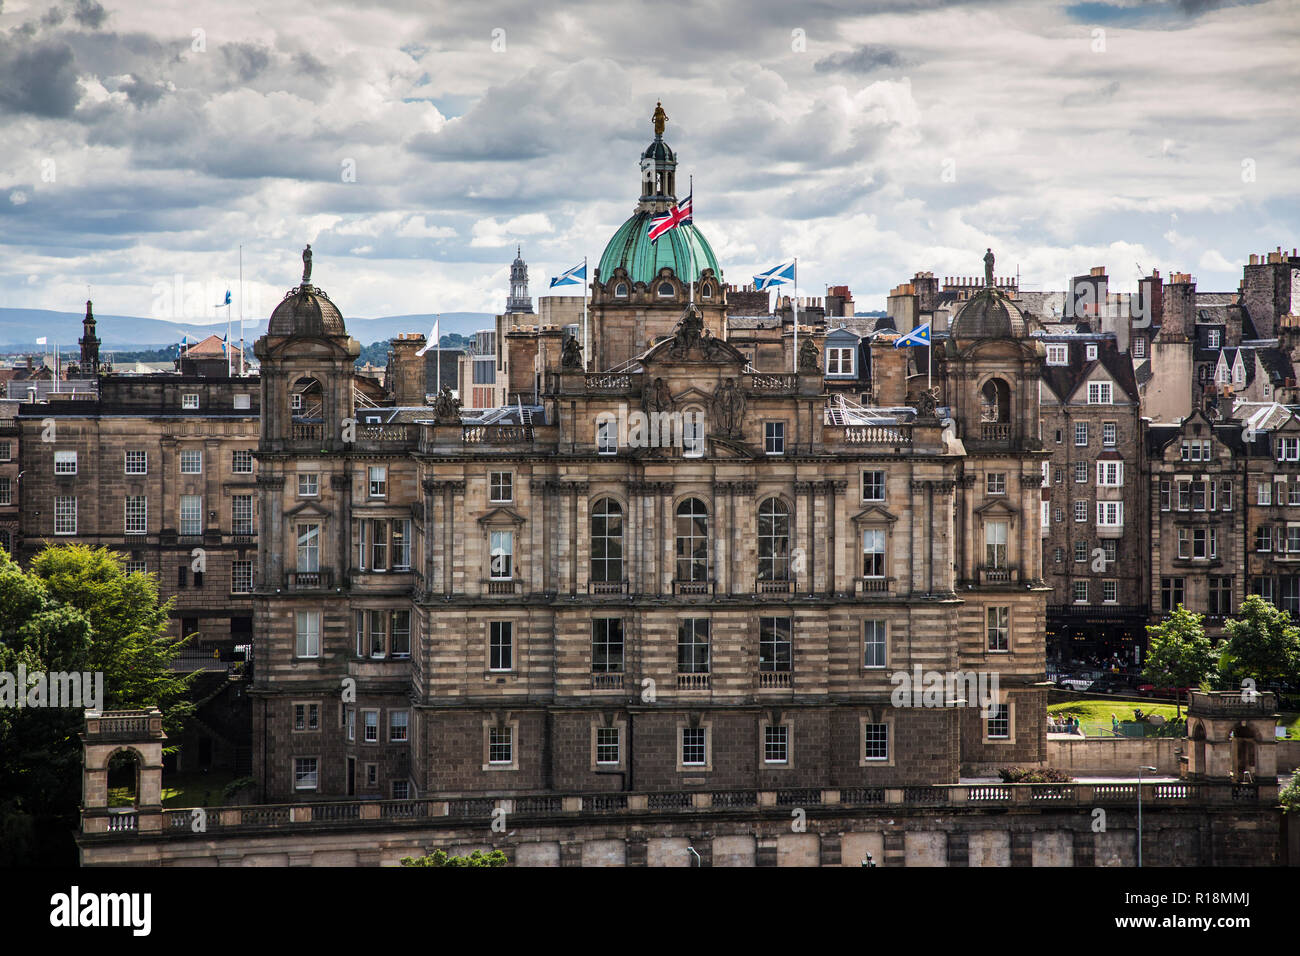 Royal Bank of Scotland (RBS) edificio nel centro storico di Edimburgo, ora un museo. La Scozia. Foto Stock